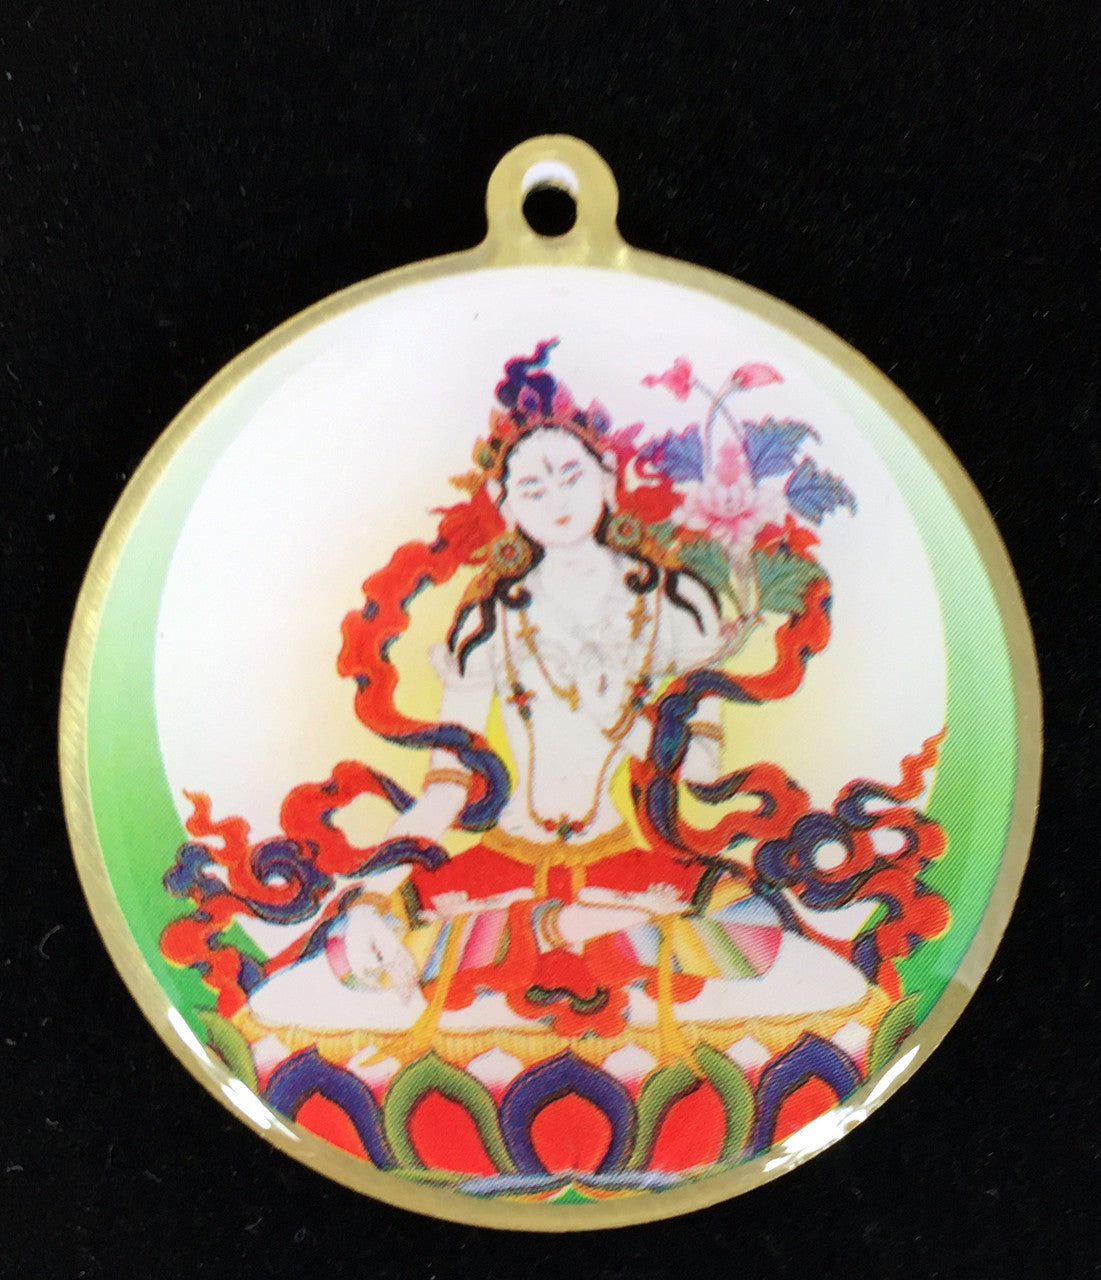 White Tara Mantra Deity Medallion